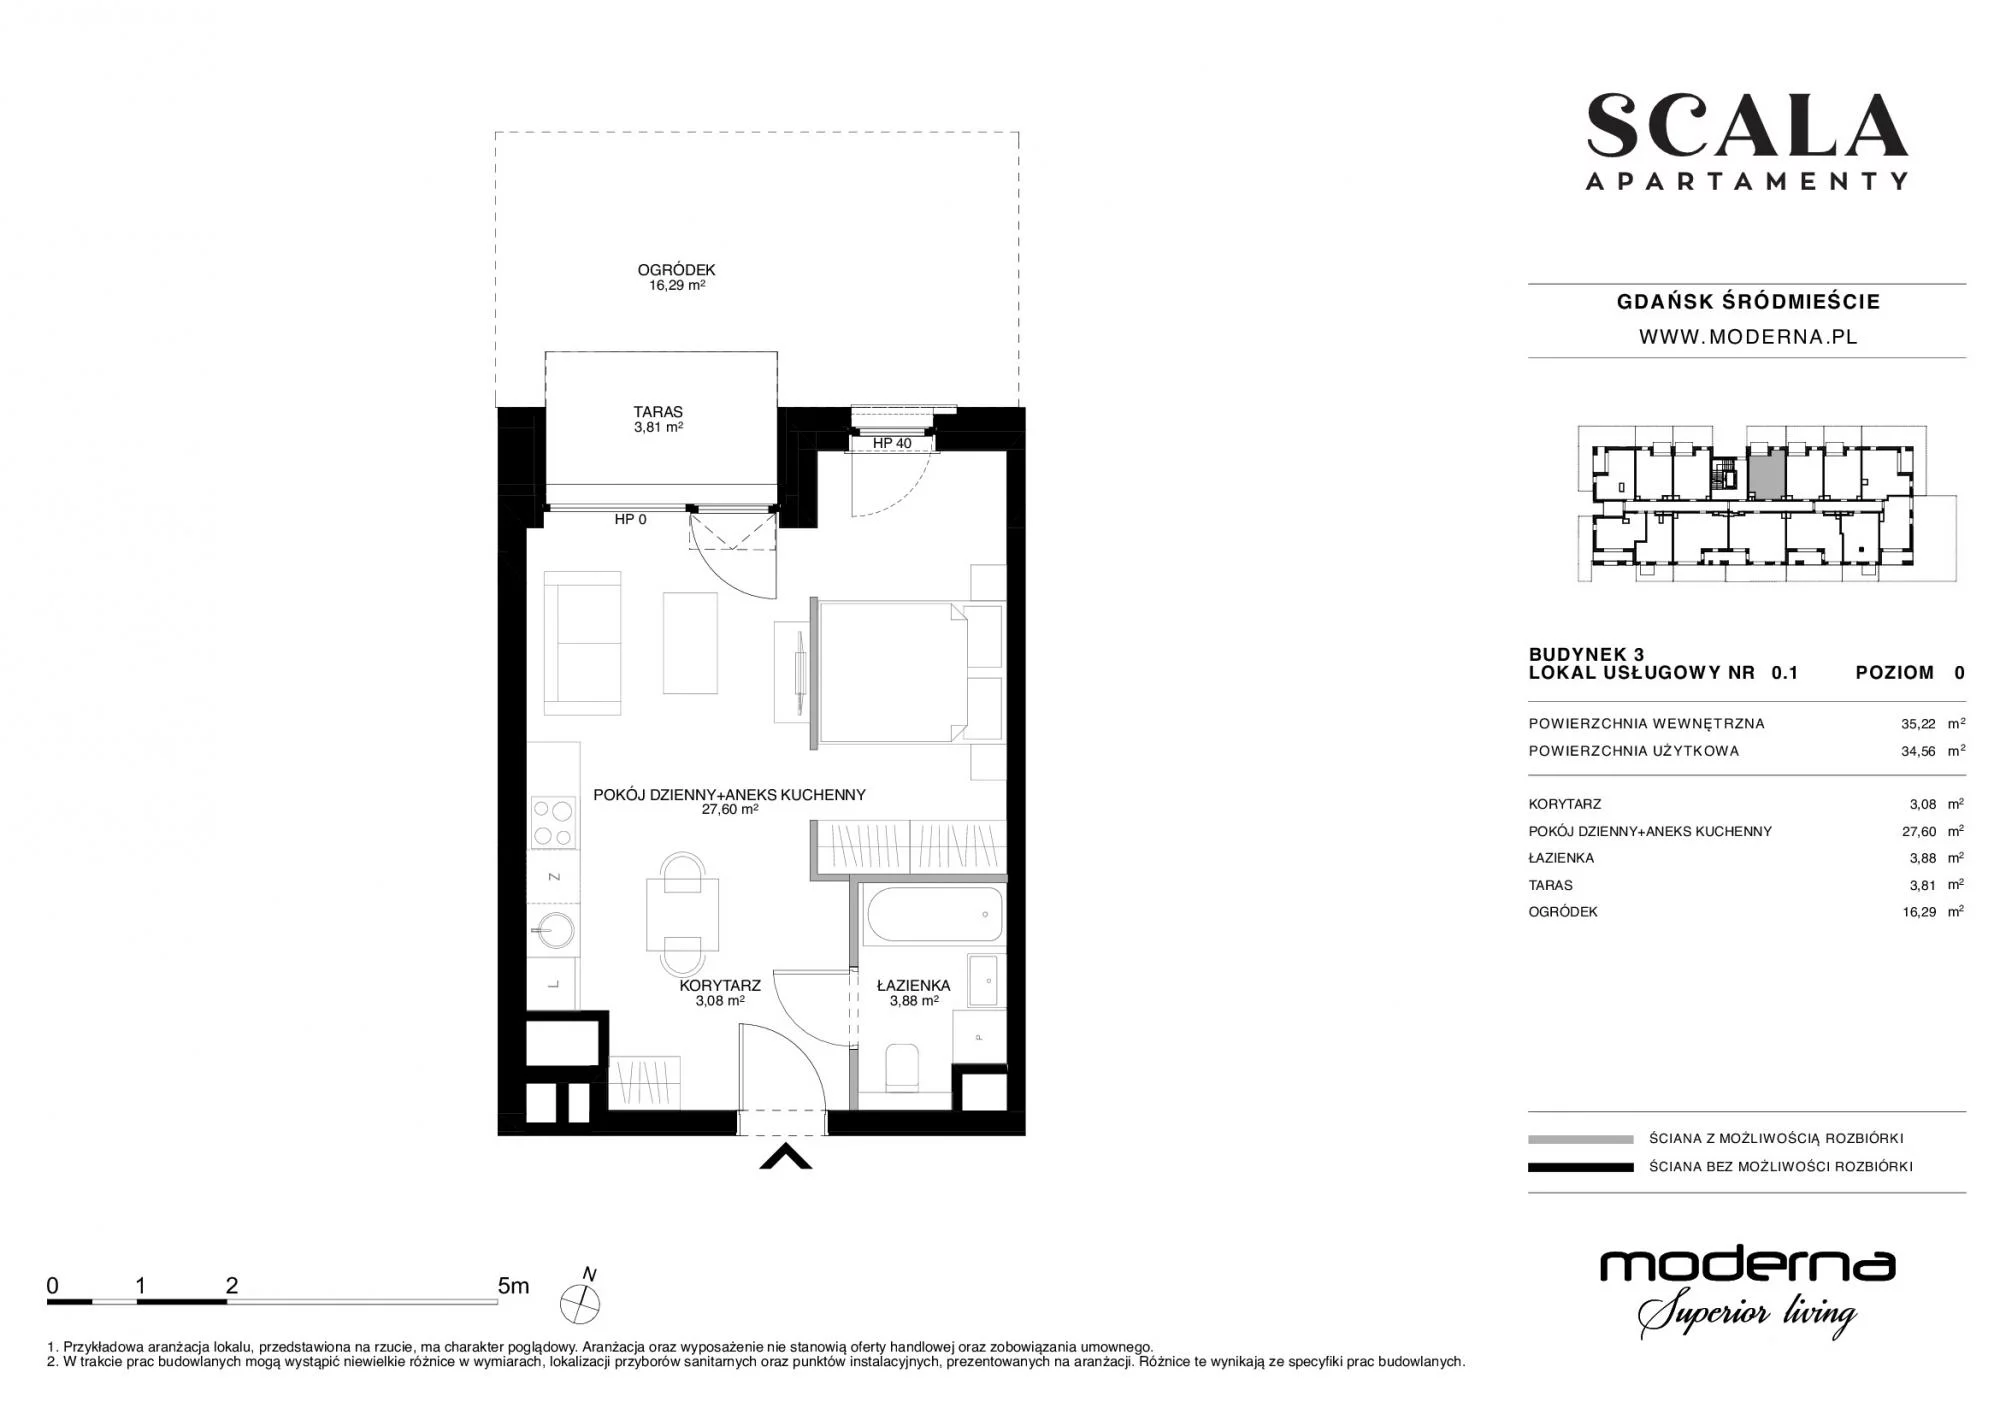 Apartament 35,02 m², parter, oferta nr 3-0.1., Scala, Gdańsk, Śródmieście, ul. Łąkowa 60C